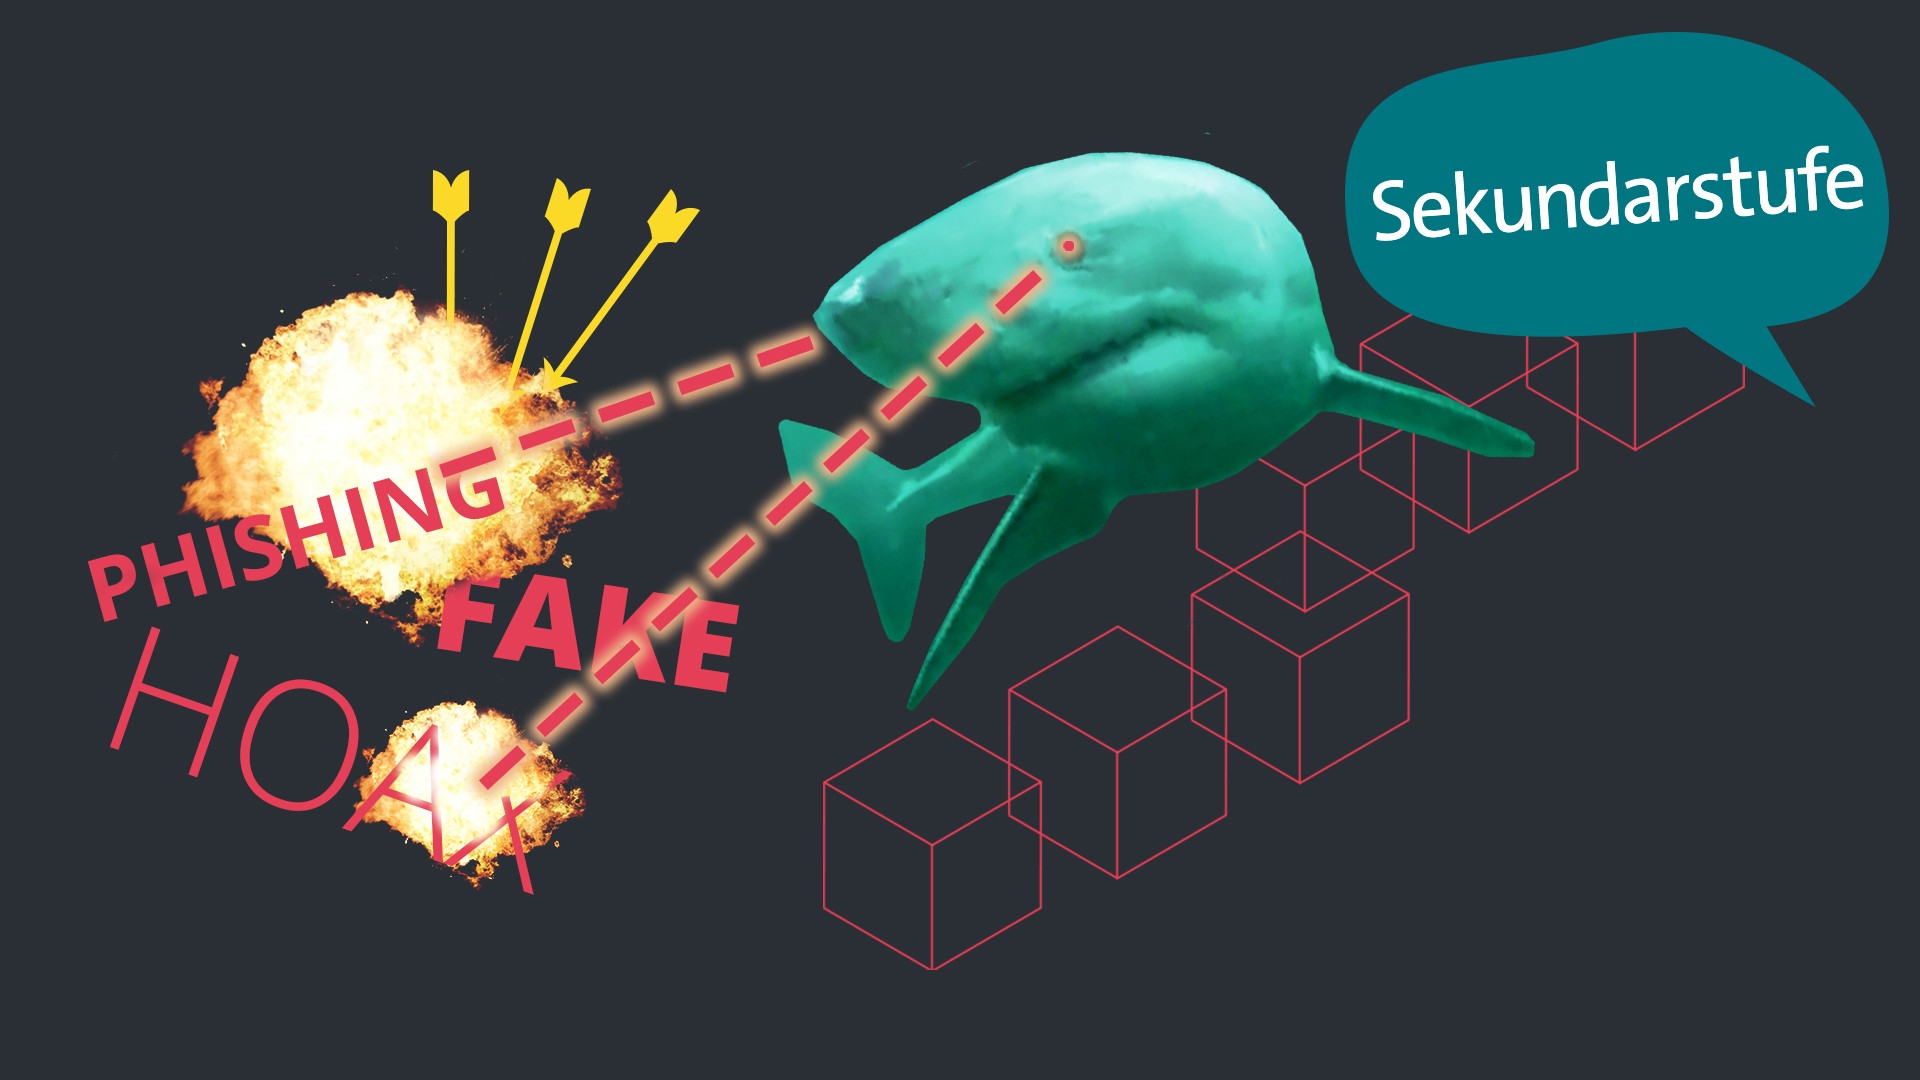 Bekämpfen von Fakes im Internet - Hai mit Laseraugen zielt auf die Wörter Fake, Phishing, Hoax | Bild: colourbox.com; Montage: BR